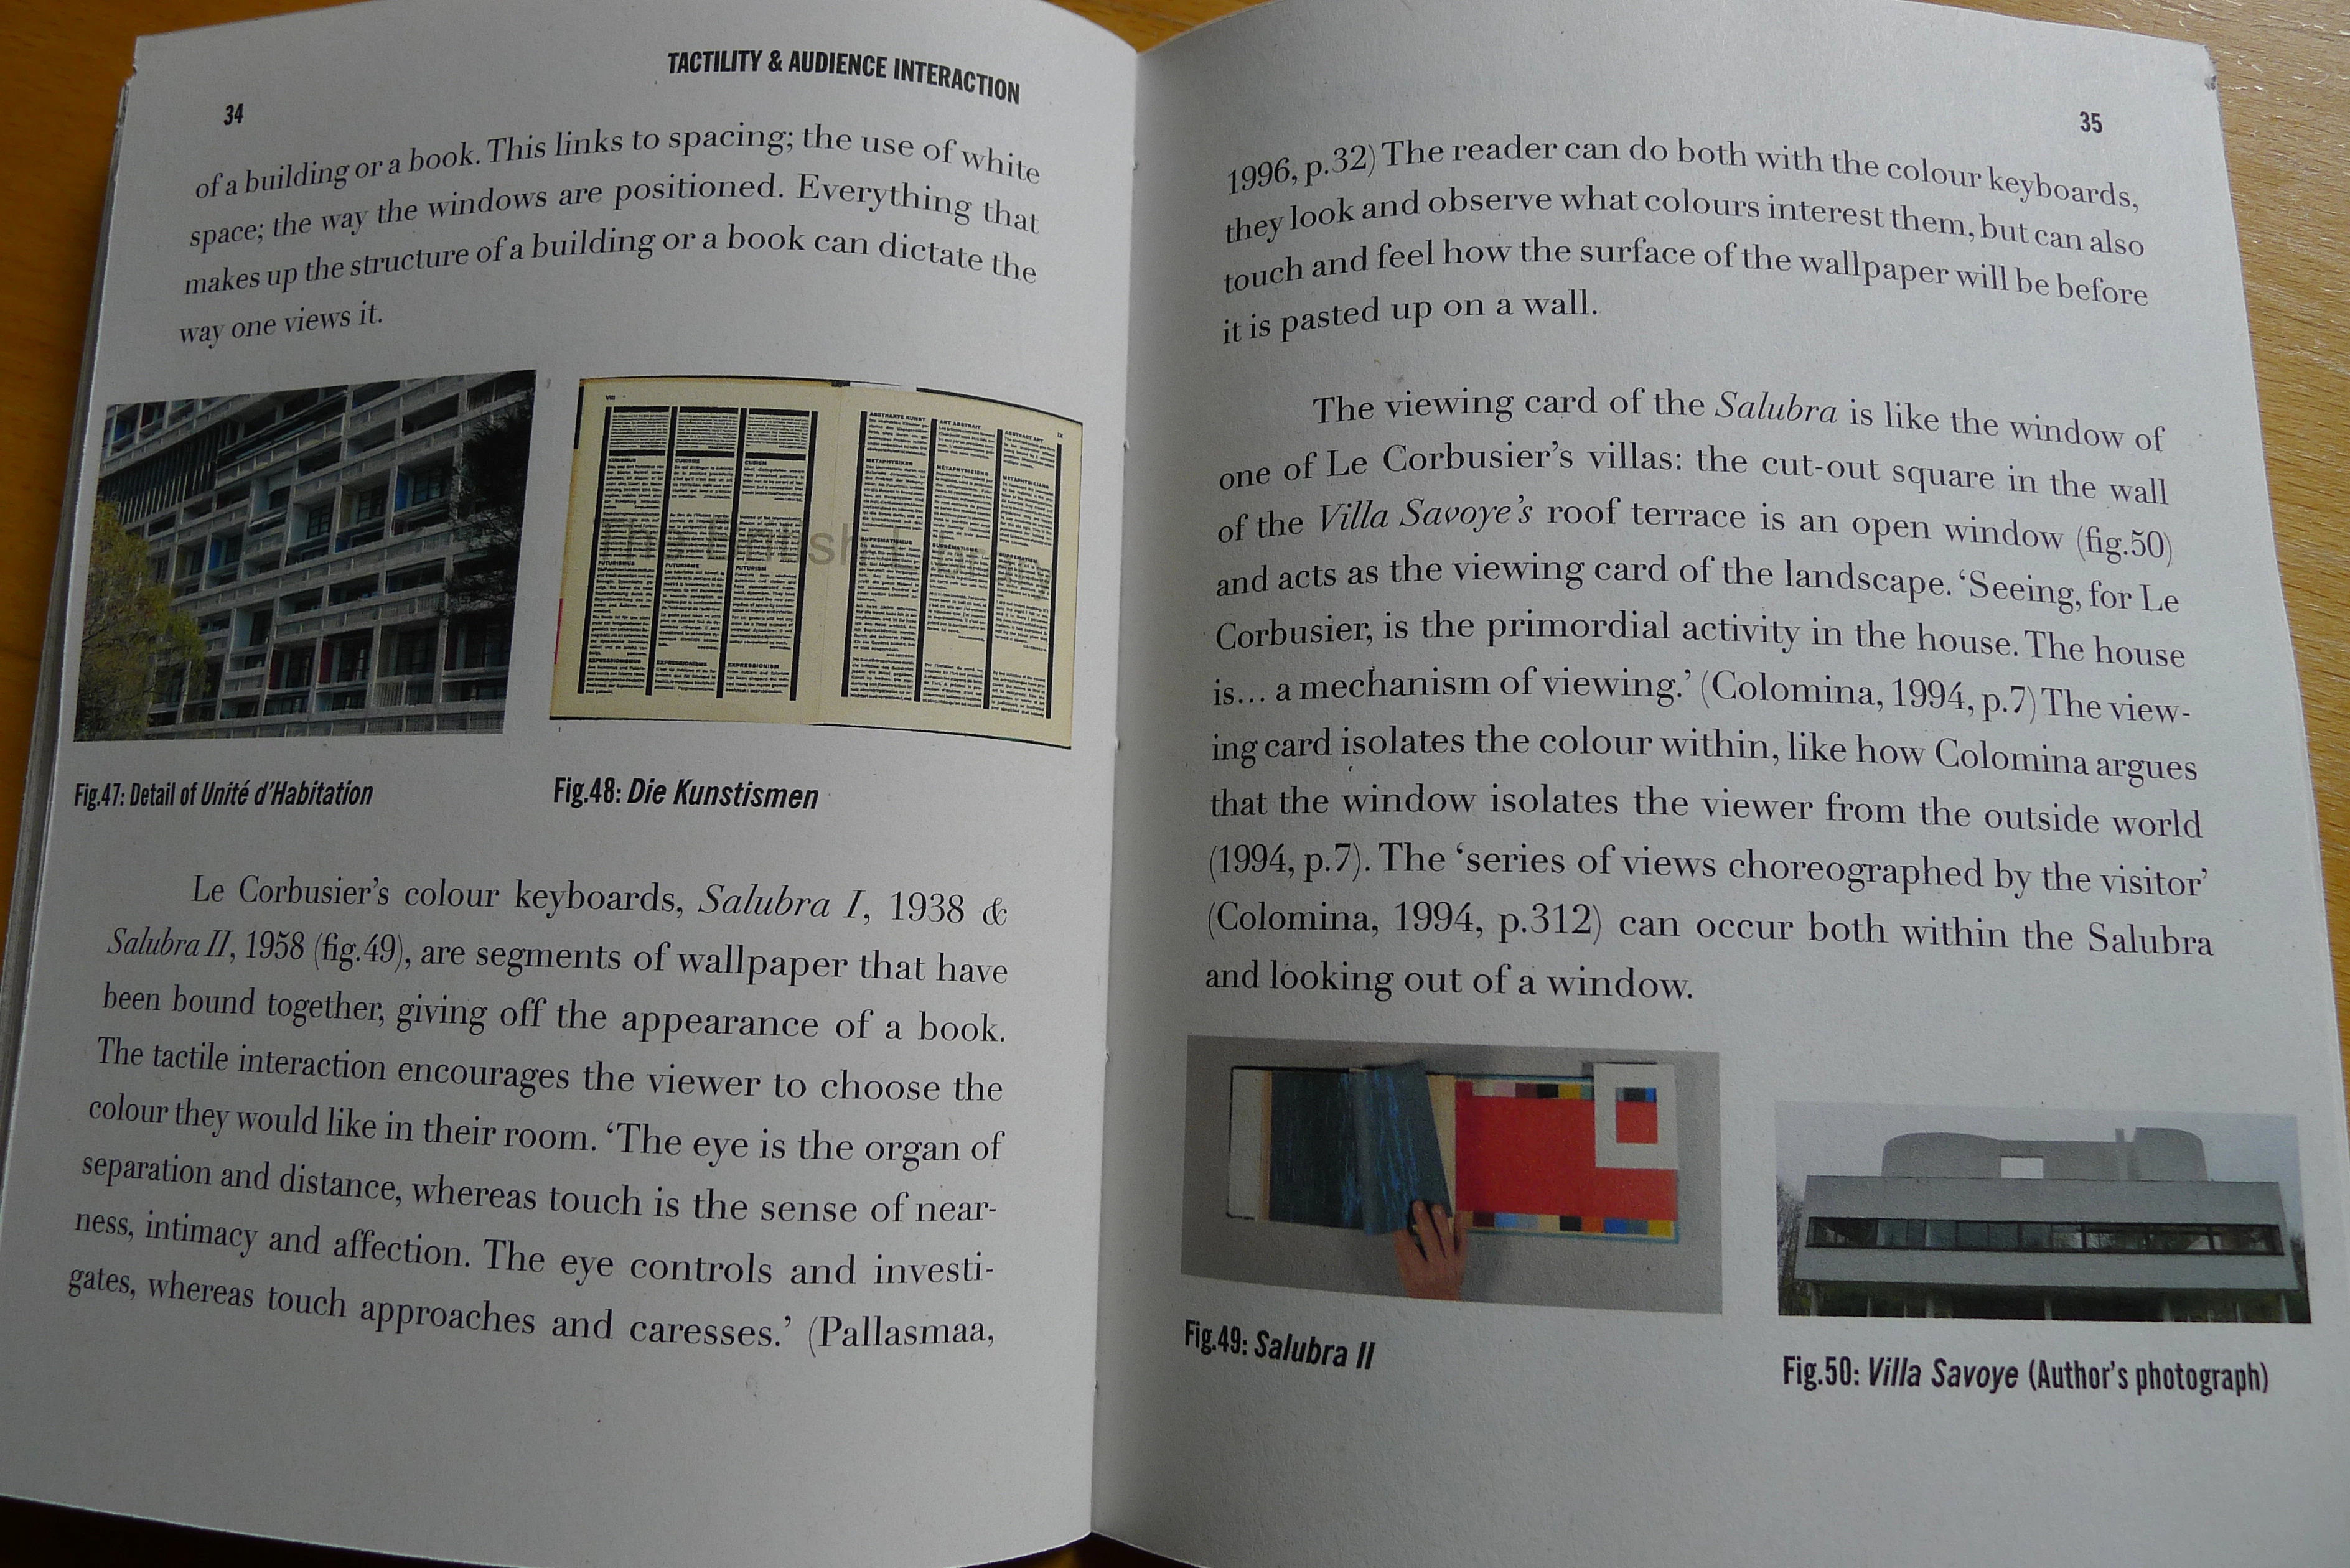 Architecture as book design, book design as architecture